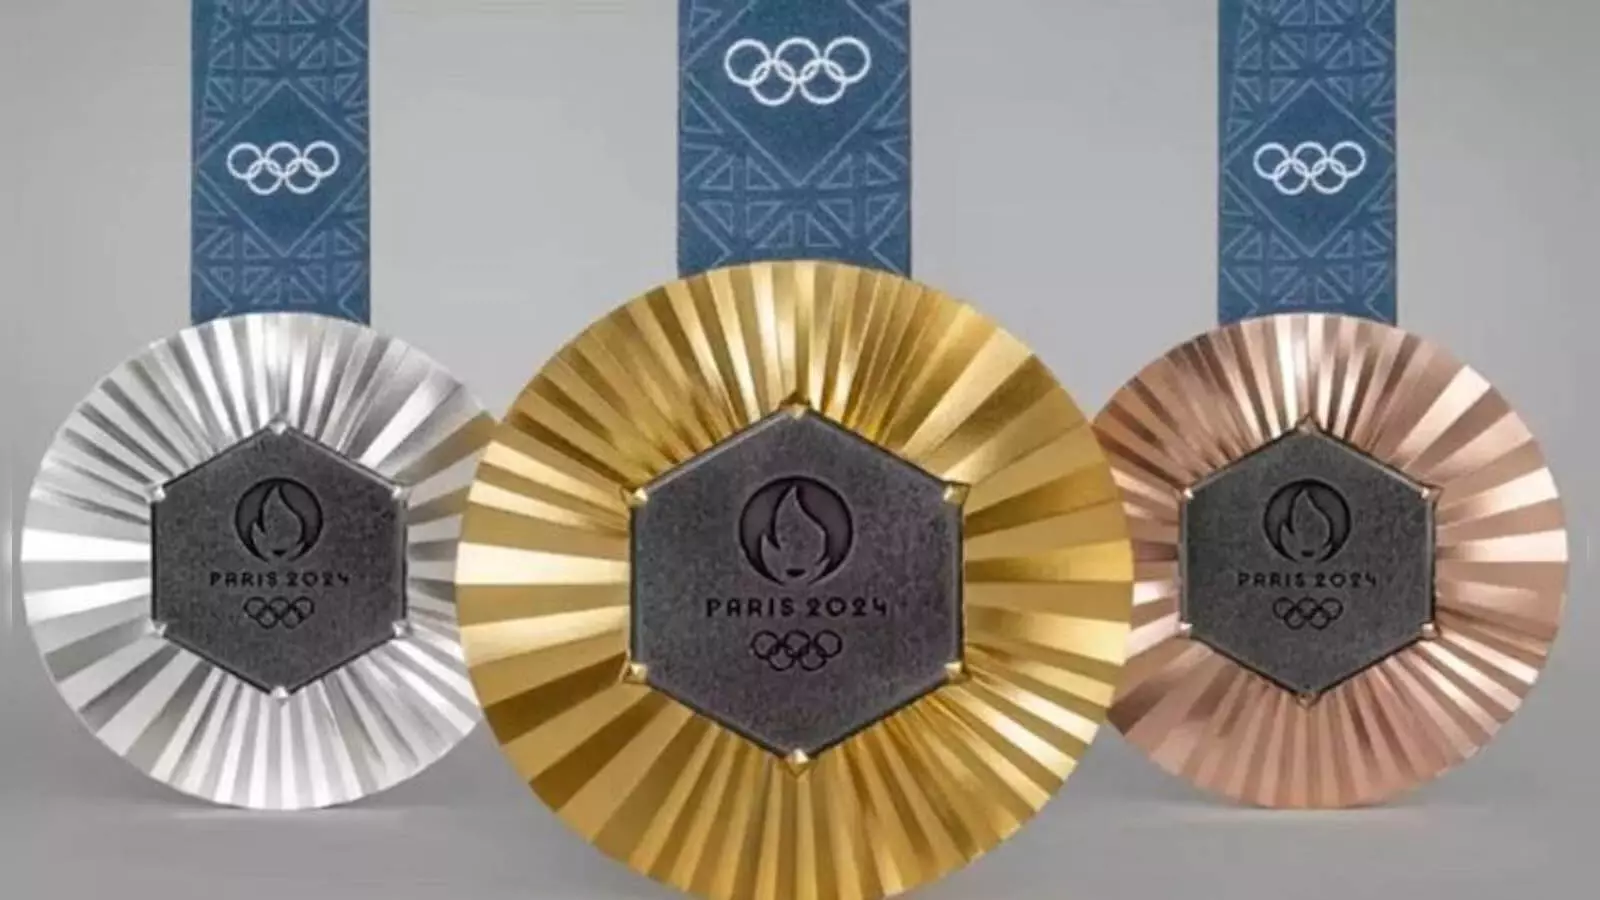 Olympics में मेडल जीतने पर कितने पैसे मिलेंगे?